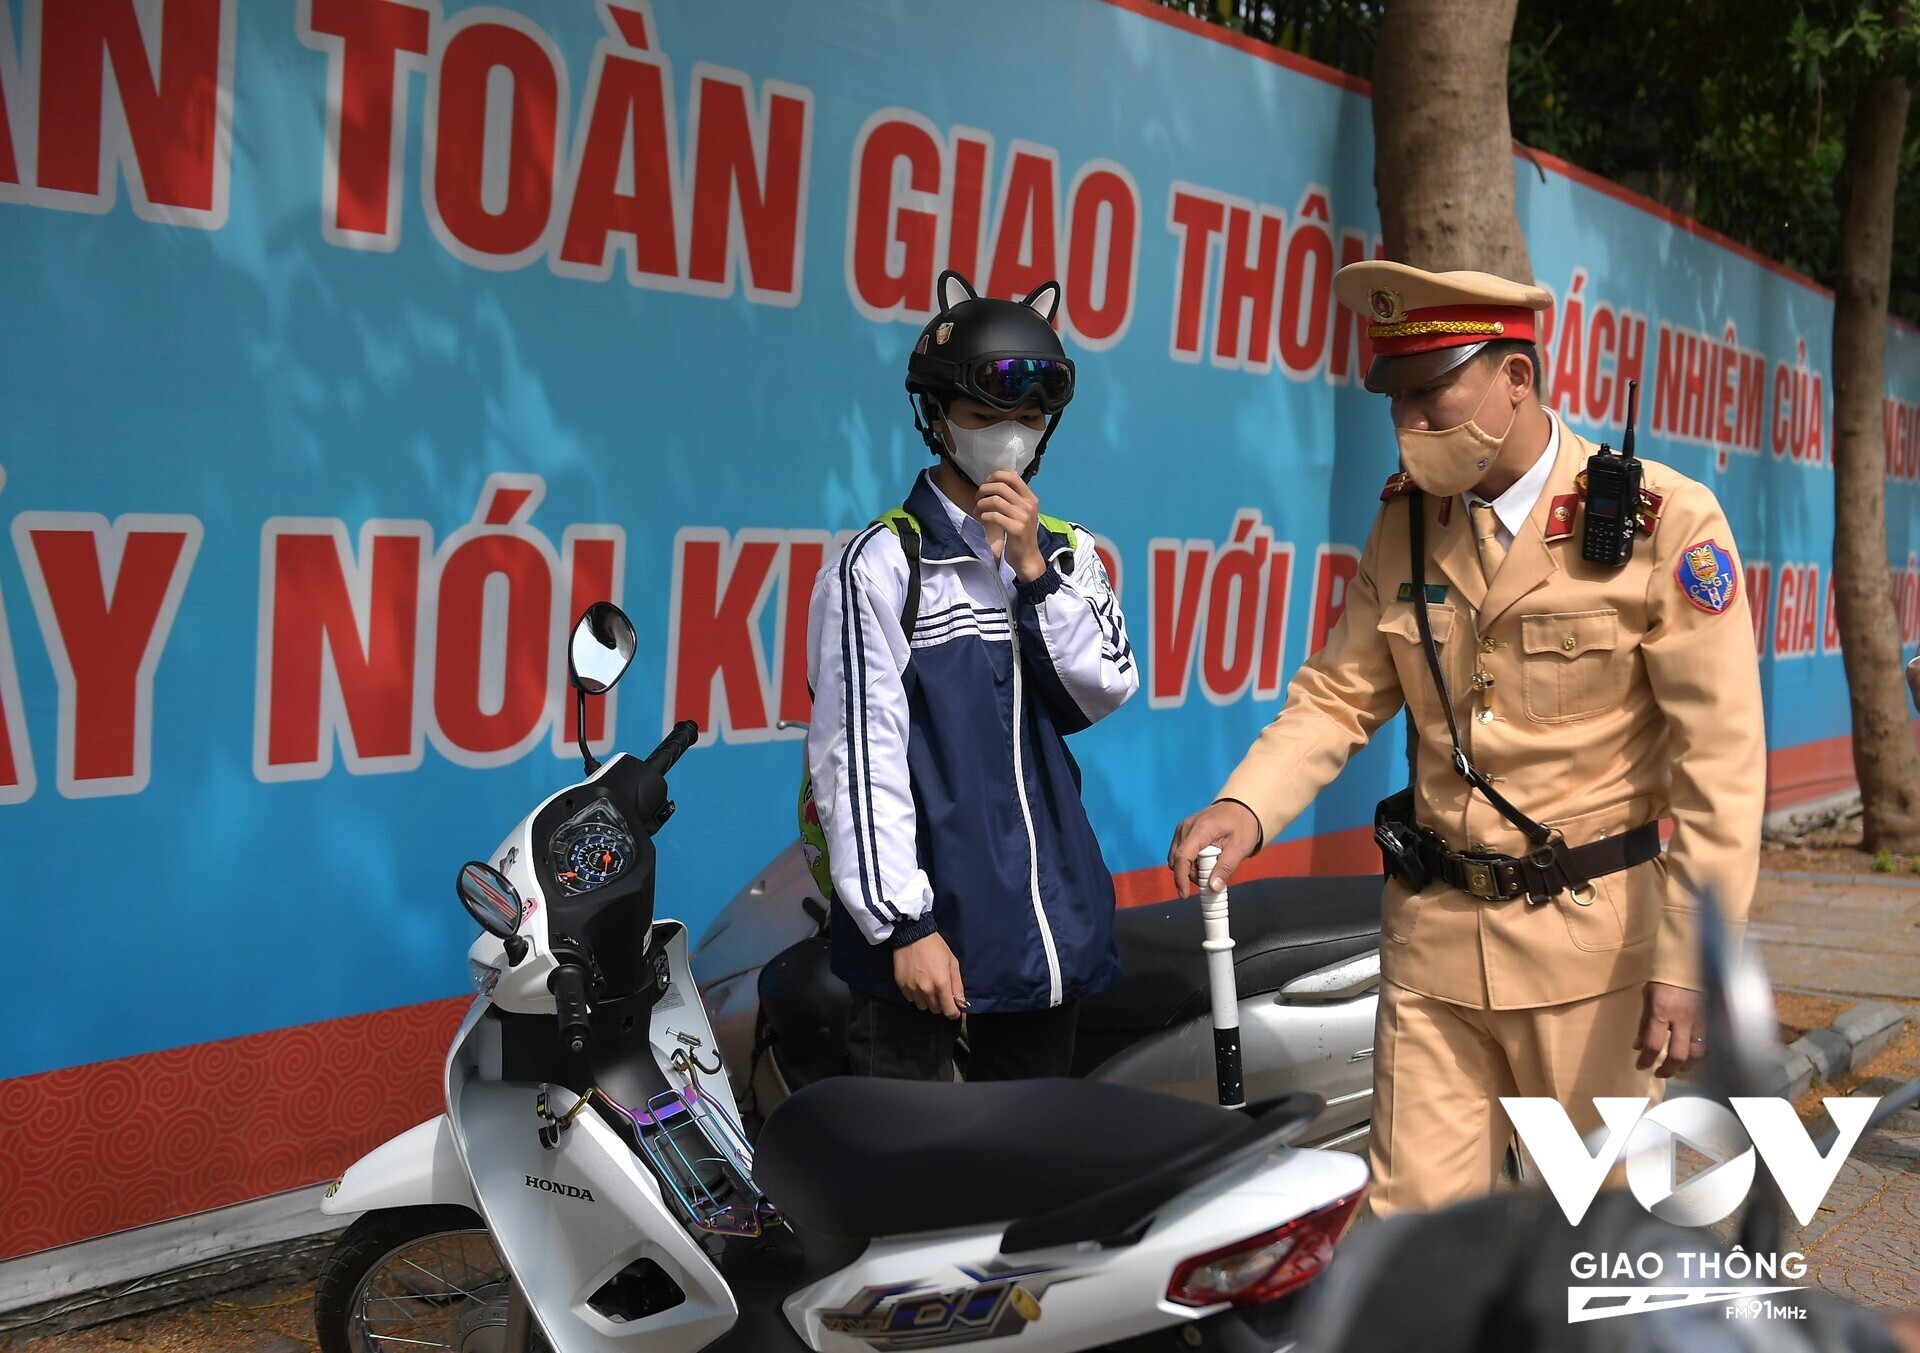 Tổ công tác phát hiện N.V.K (16 tuổi, đang học tại trường THPT trên địa bàn quận Long Biên) điều khiển xe trên 50 phân khối. K cho biết, do nhà gần nên hàng ngày bố mẹ đã cho tự đi học bằng xe máy.